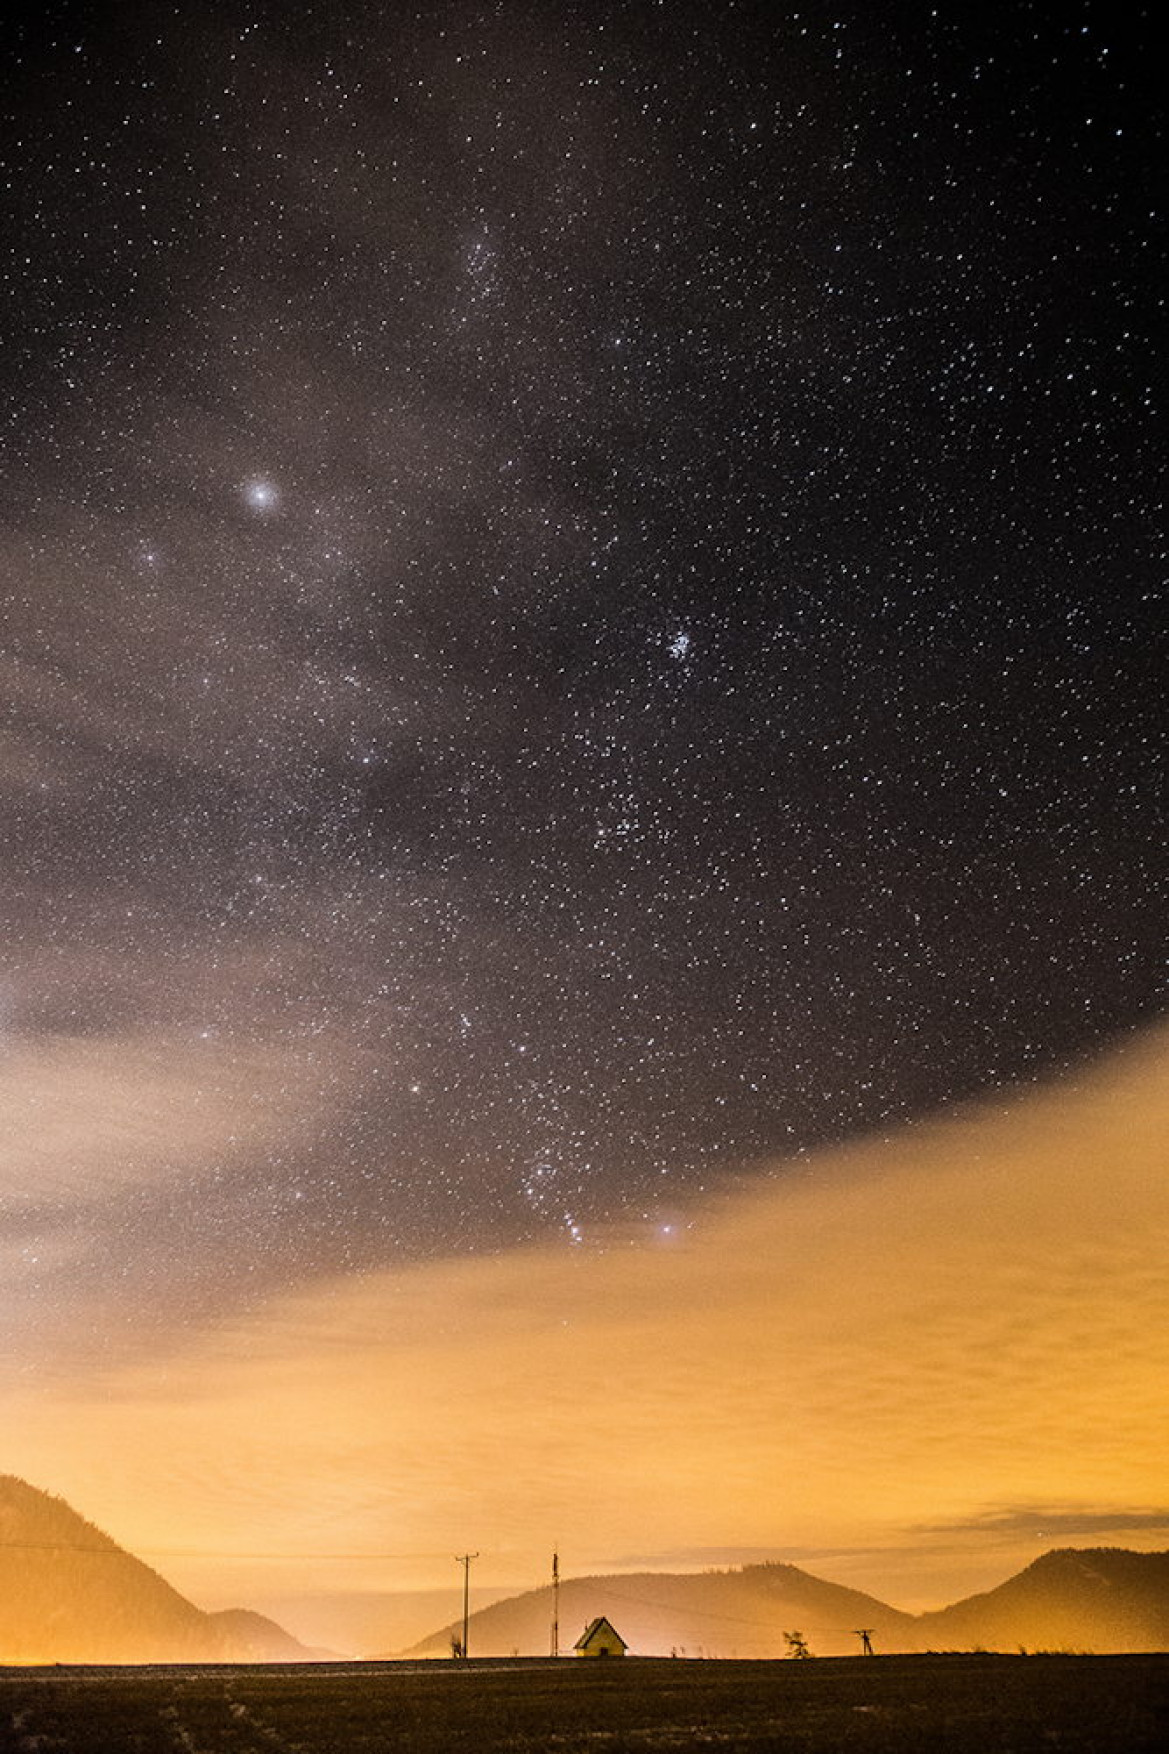 "H. O. M. E. etc.", fot. Paweł Krok. Zdjęcie z finału konkursu Insight Astronomy Photographer of the Year 2015